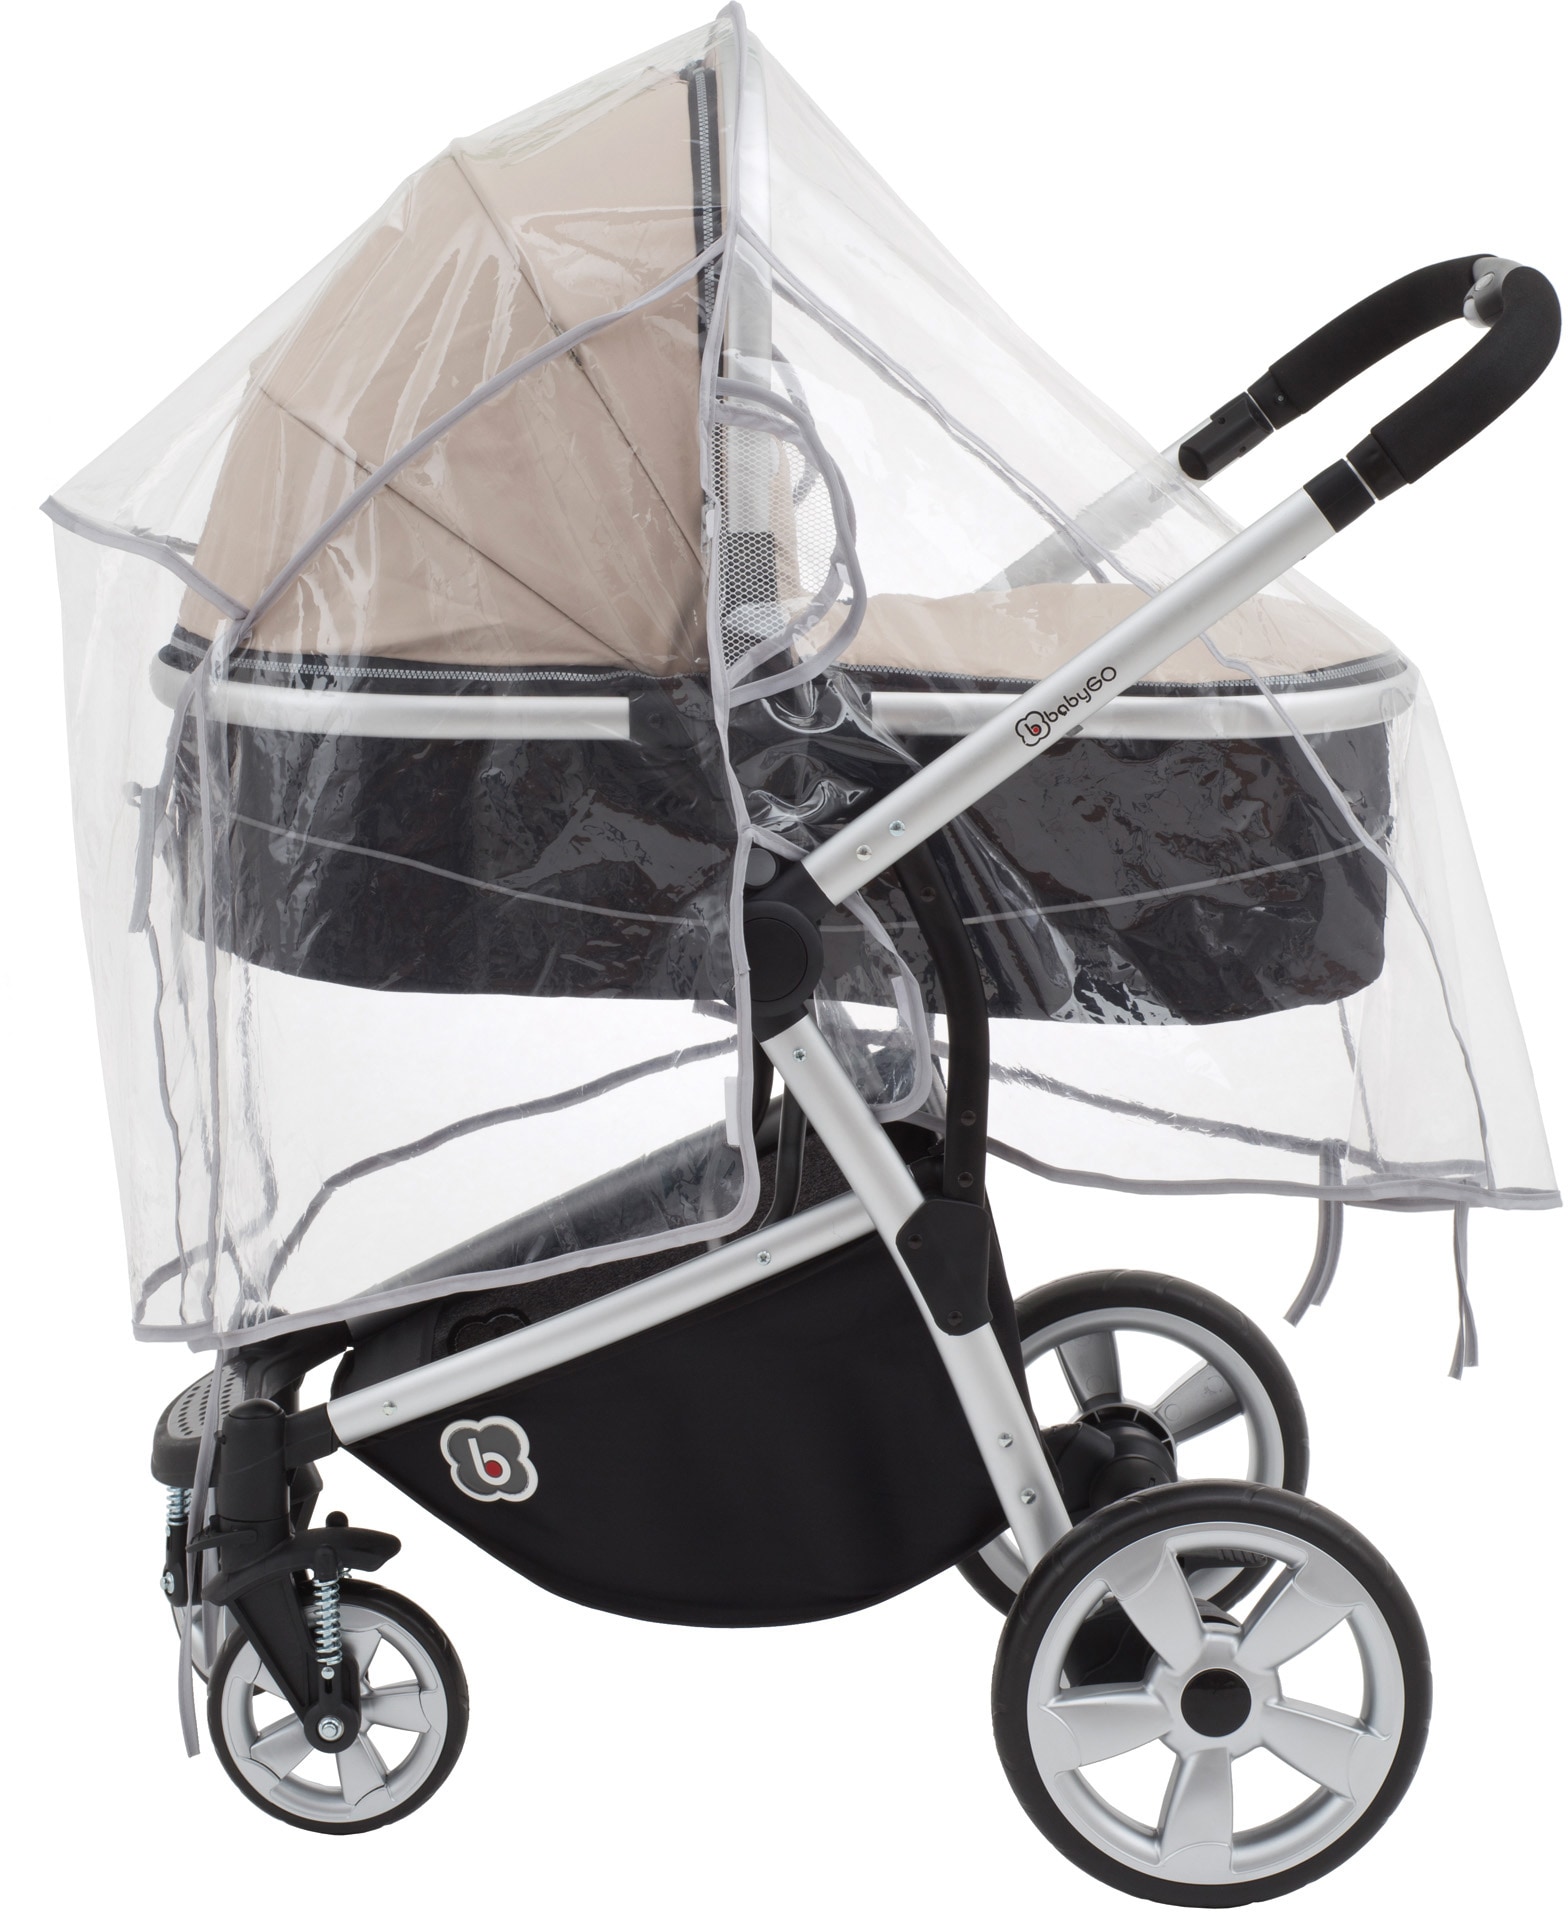 Kinderwagen-Regenschutzhülle »Regenschutz«, für Buggys; durchsichtig mit seitlichen...